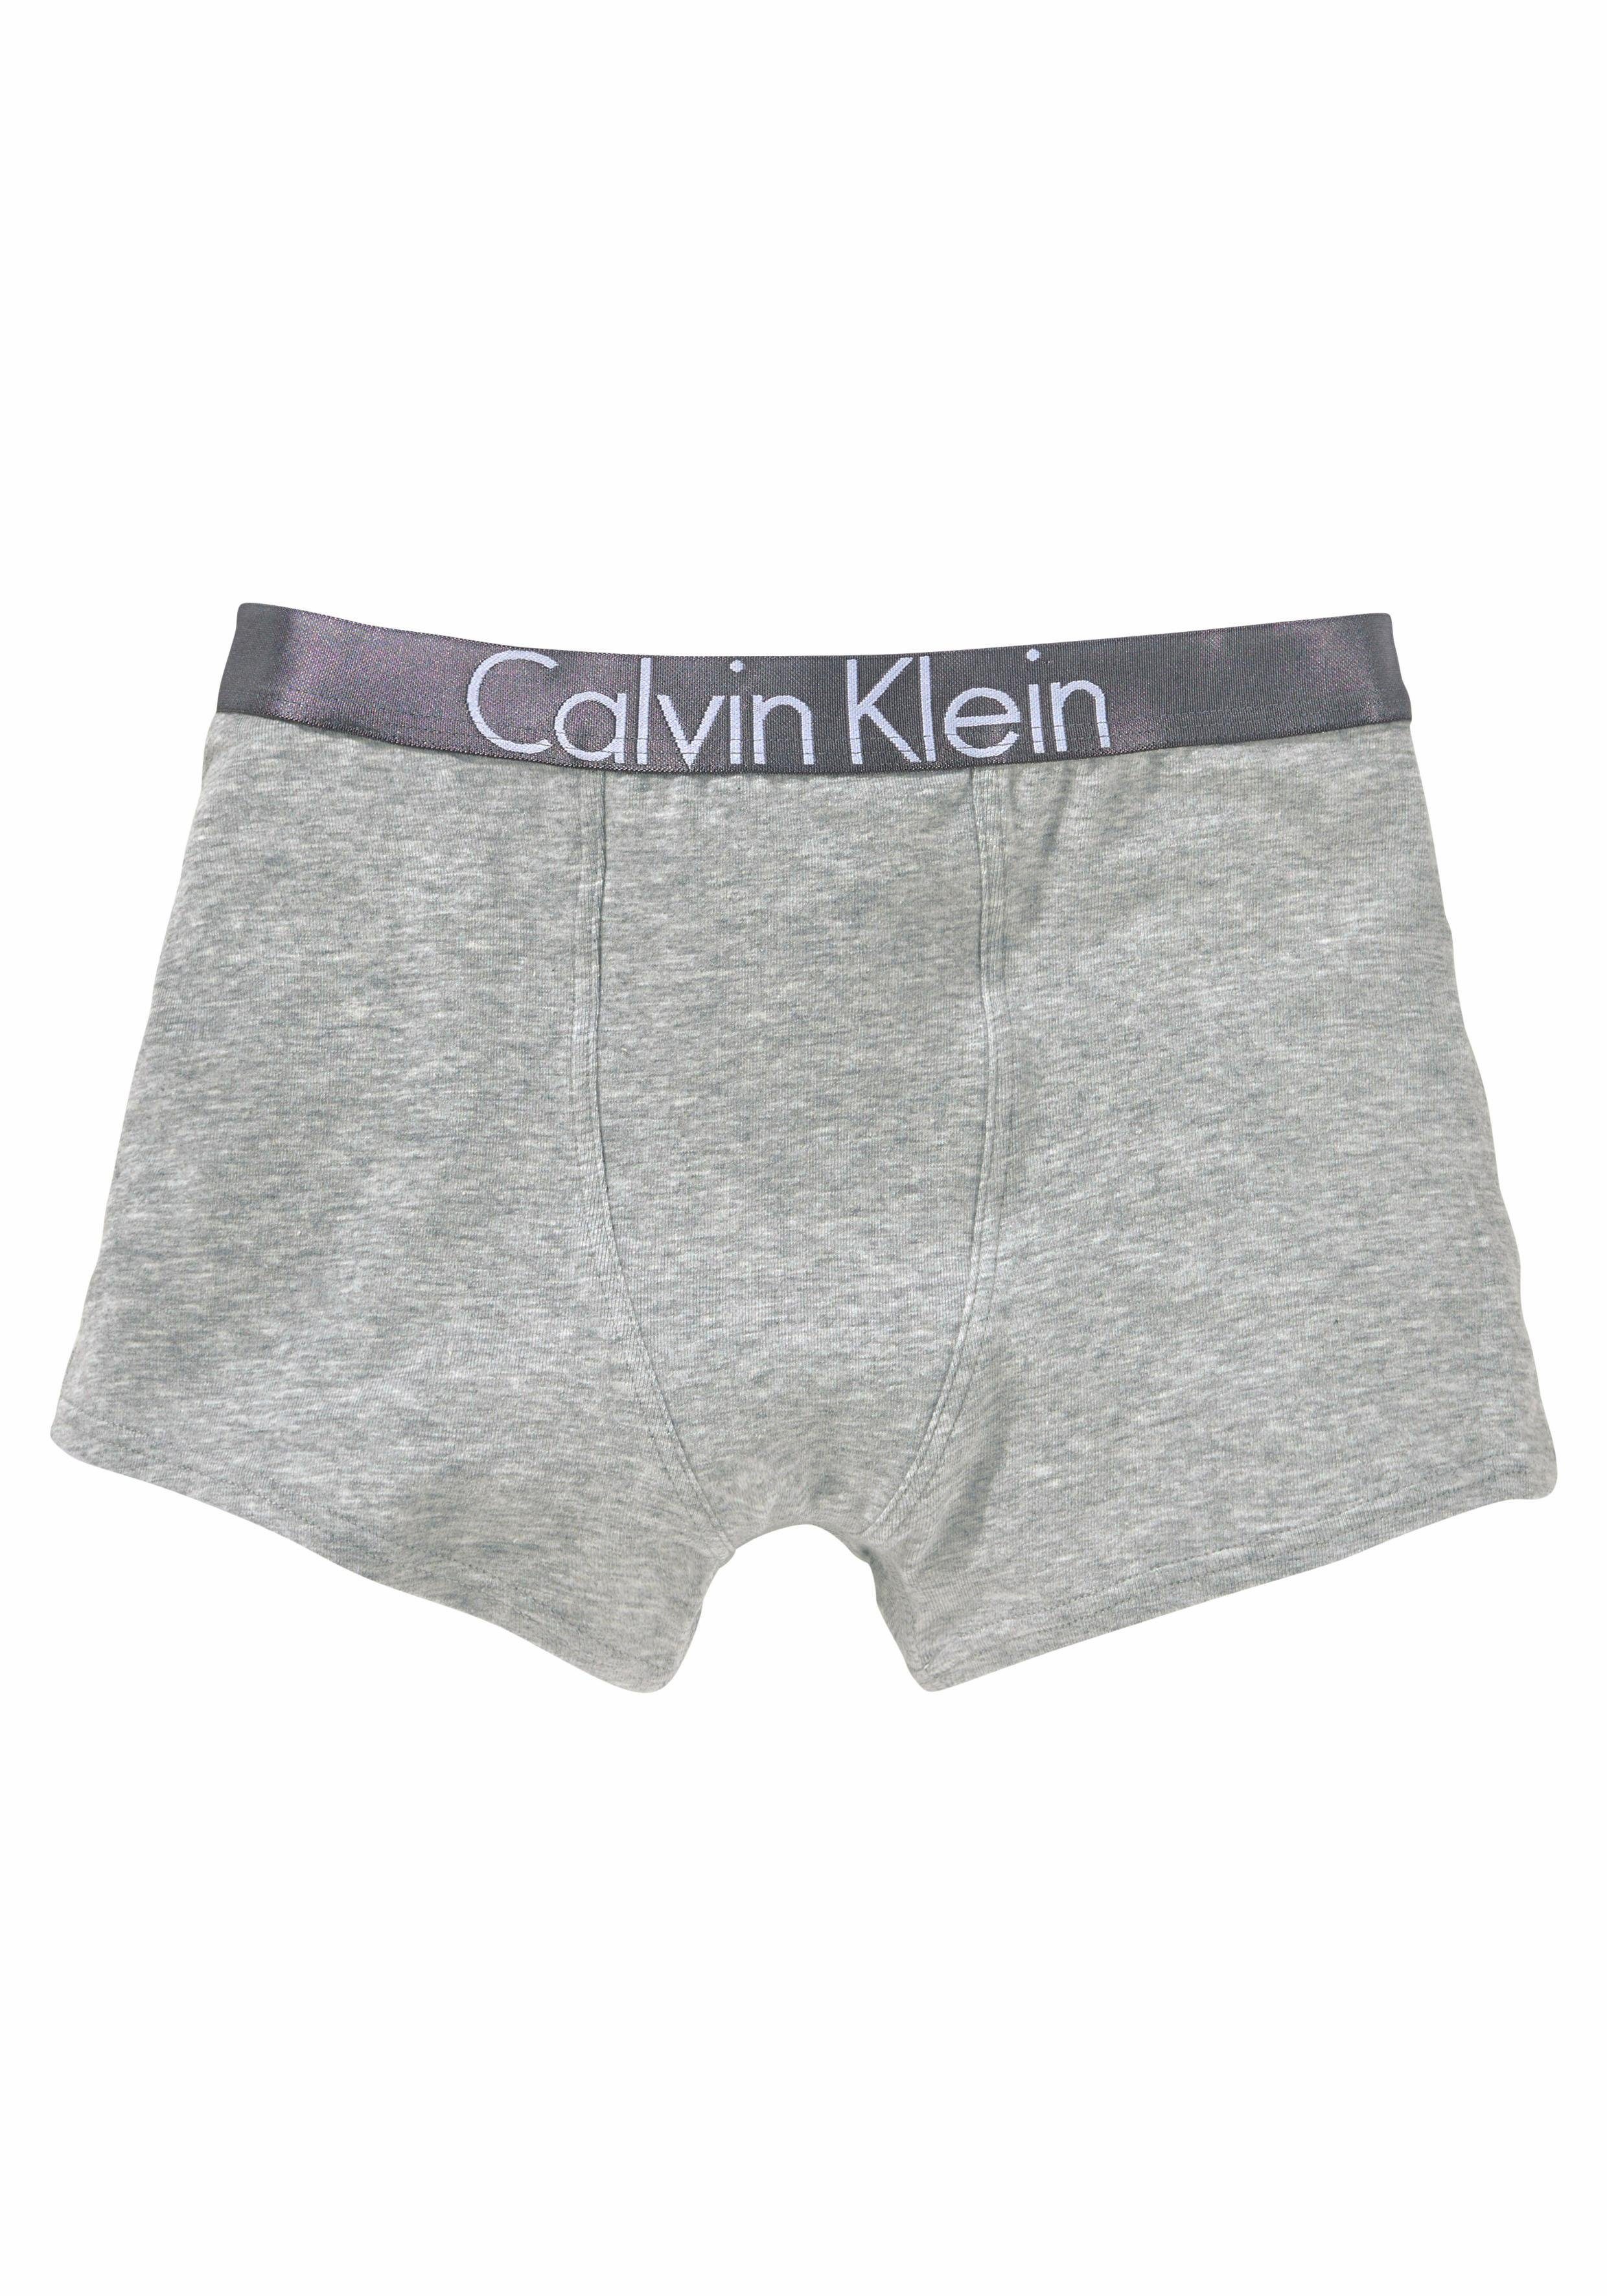 zebra zoeken Getalenteerd Calvin Klein Boxershort met zilverkleurige band (2 stuks) makkelijk besteld  | OTTO